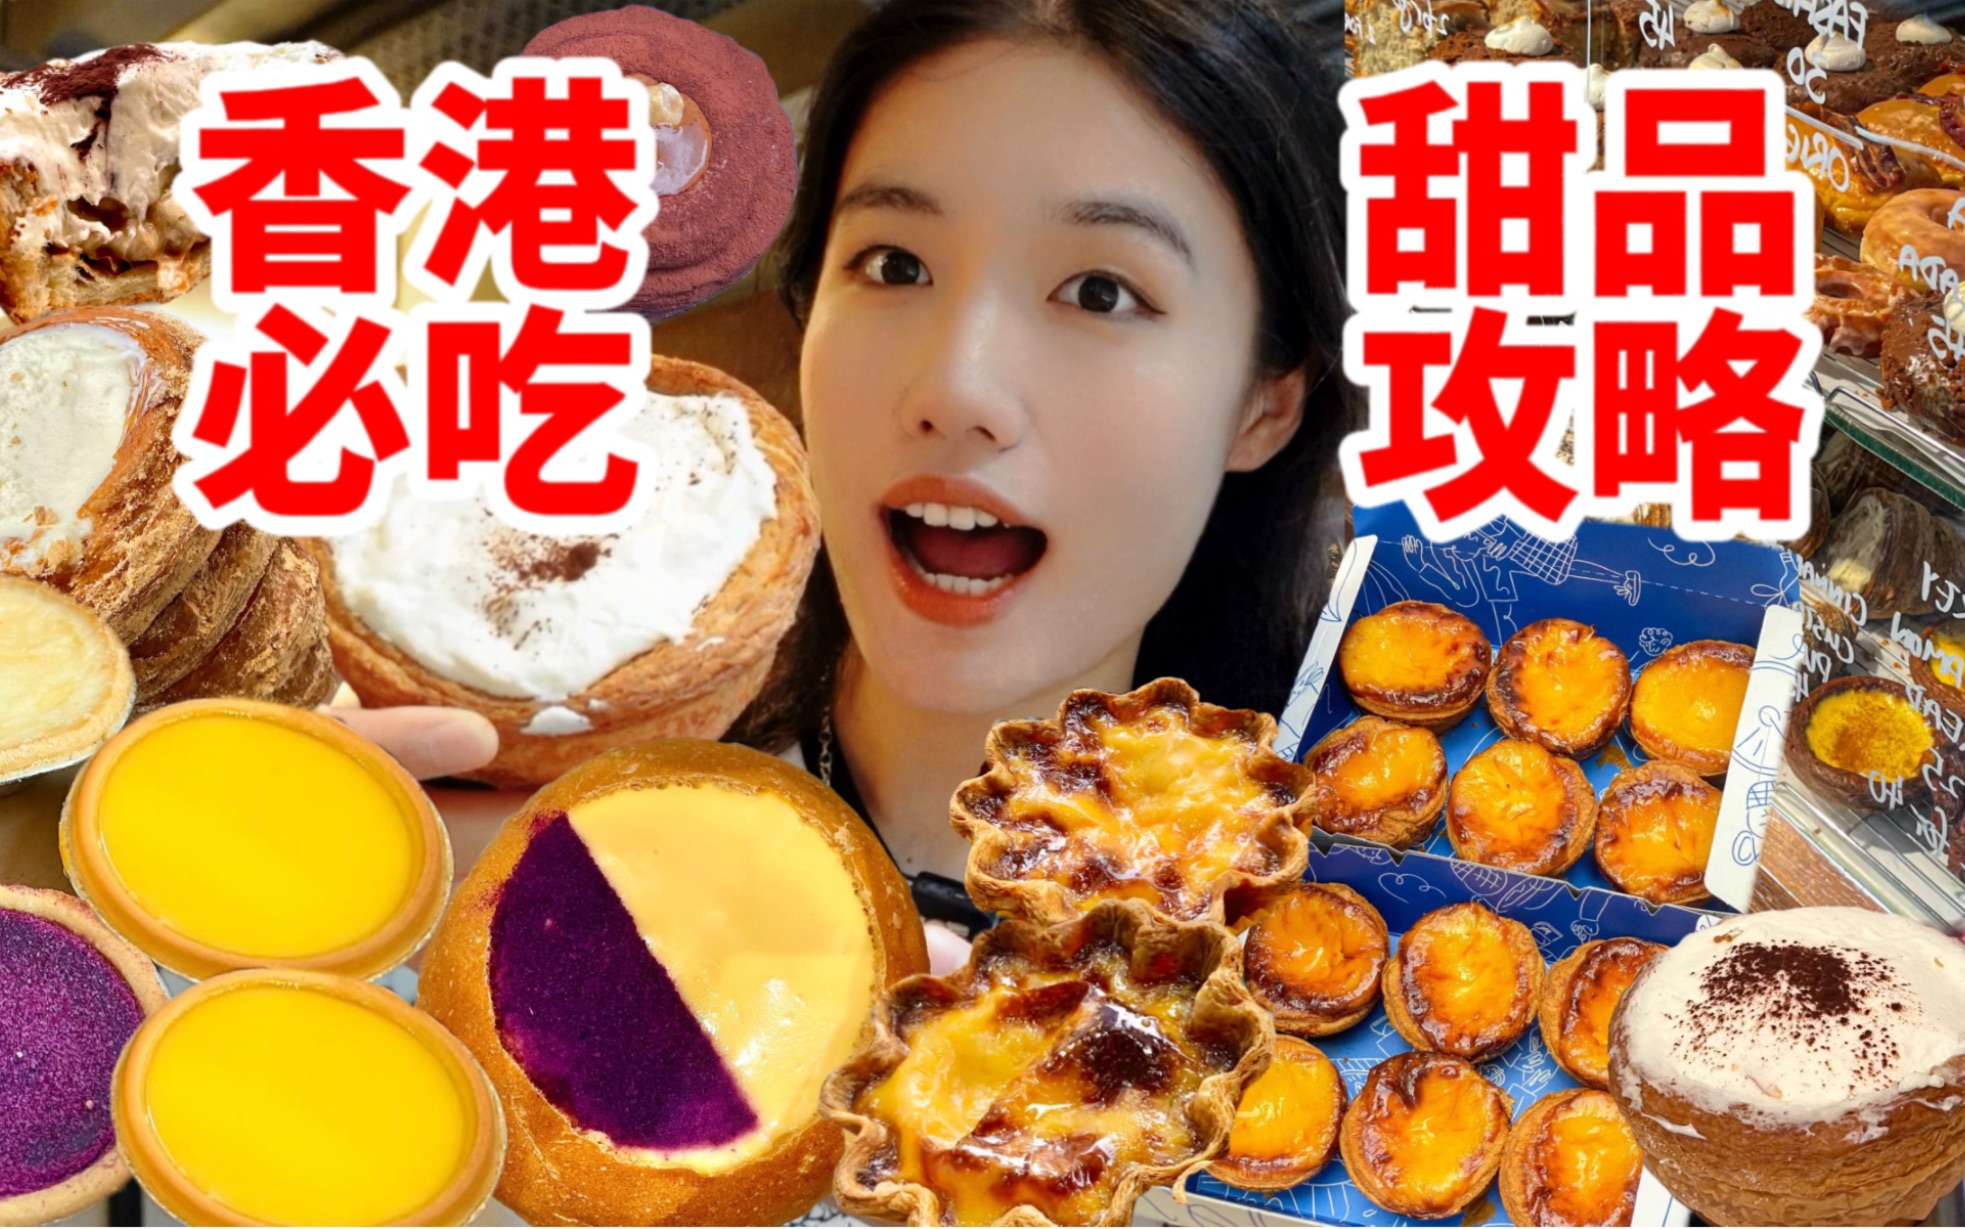 这就是来香港的意义…甜品脑袋的天堂！来香港就为了这一口…香港的蛋挞真的吃不腻！一天狂炫十几份甜品！！！下次还来！无广吃甜员